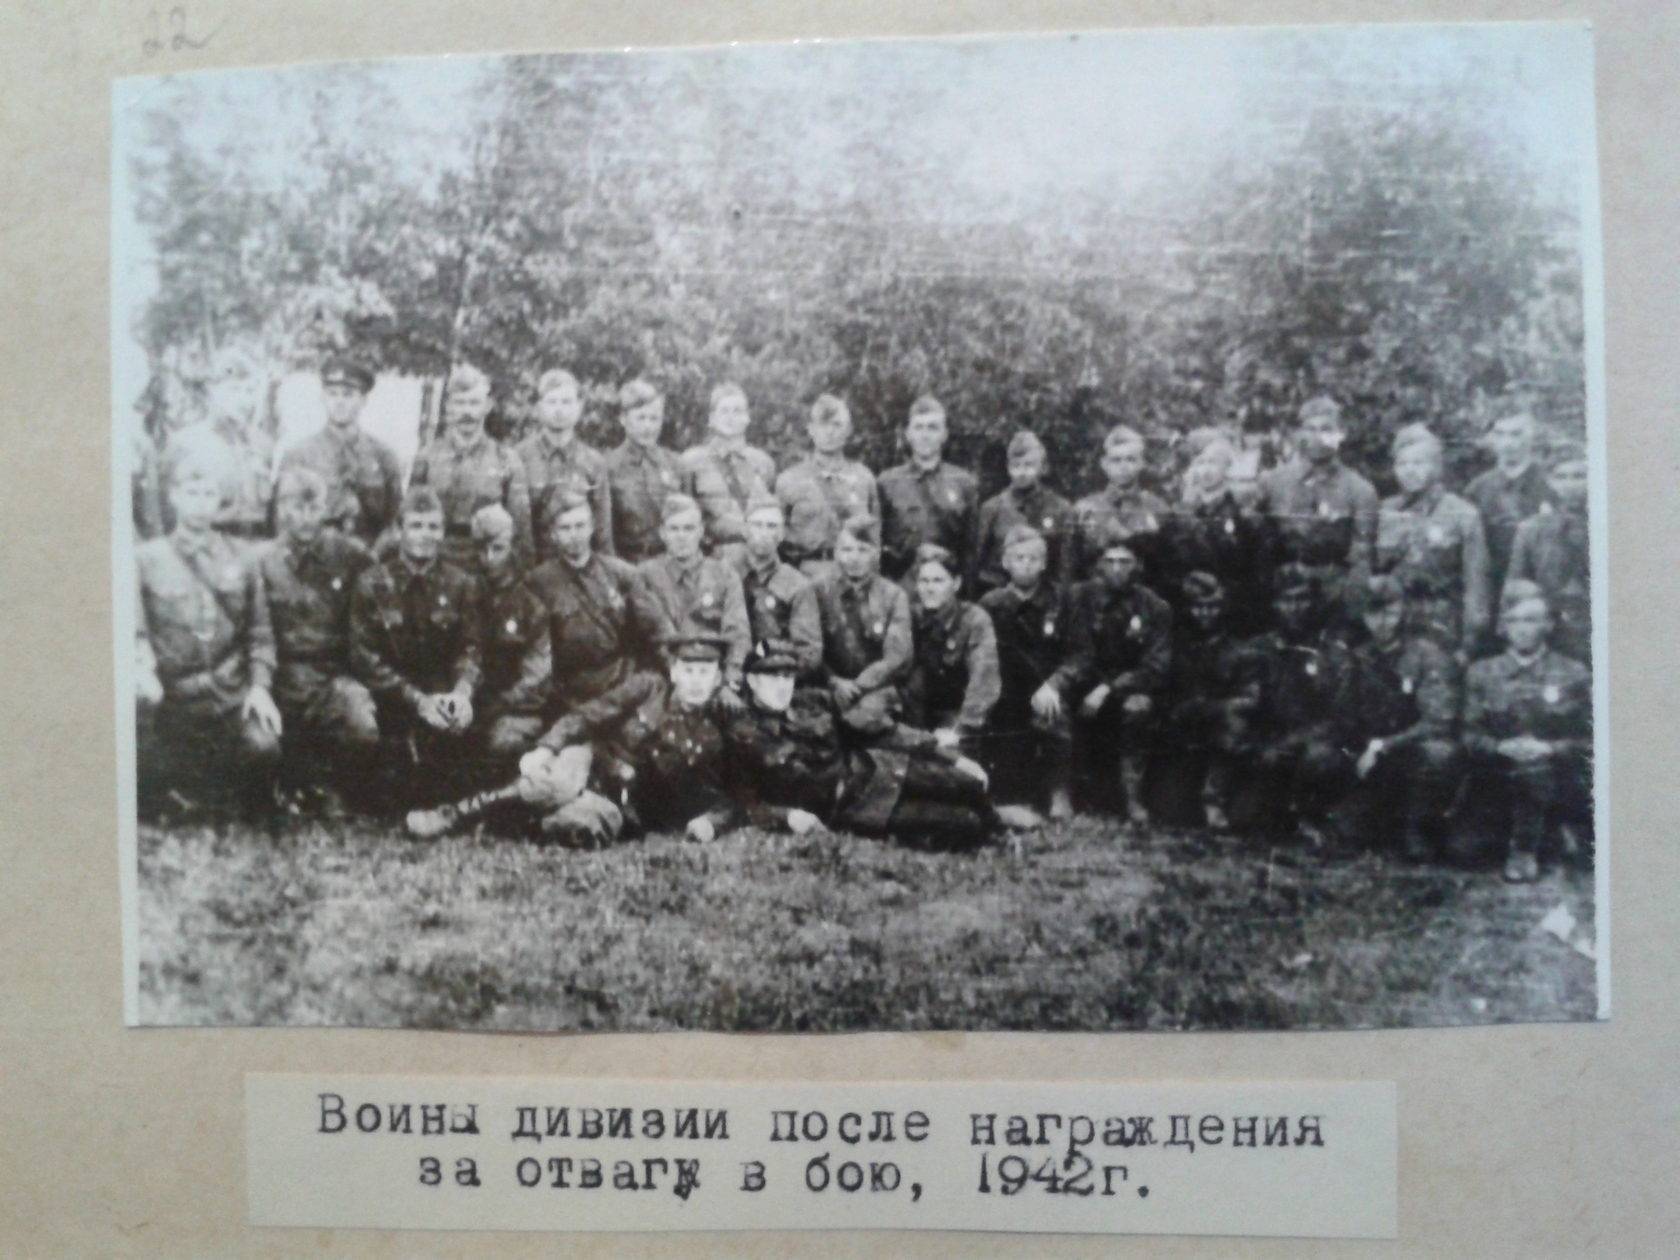 Иркутско-Пинская дивизия